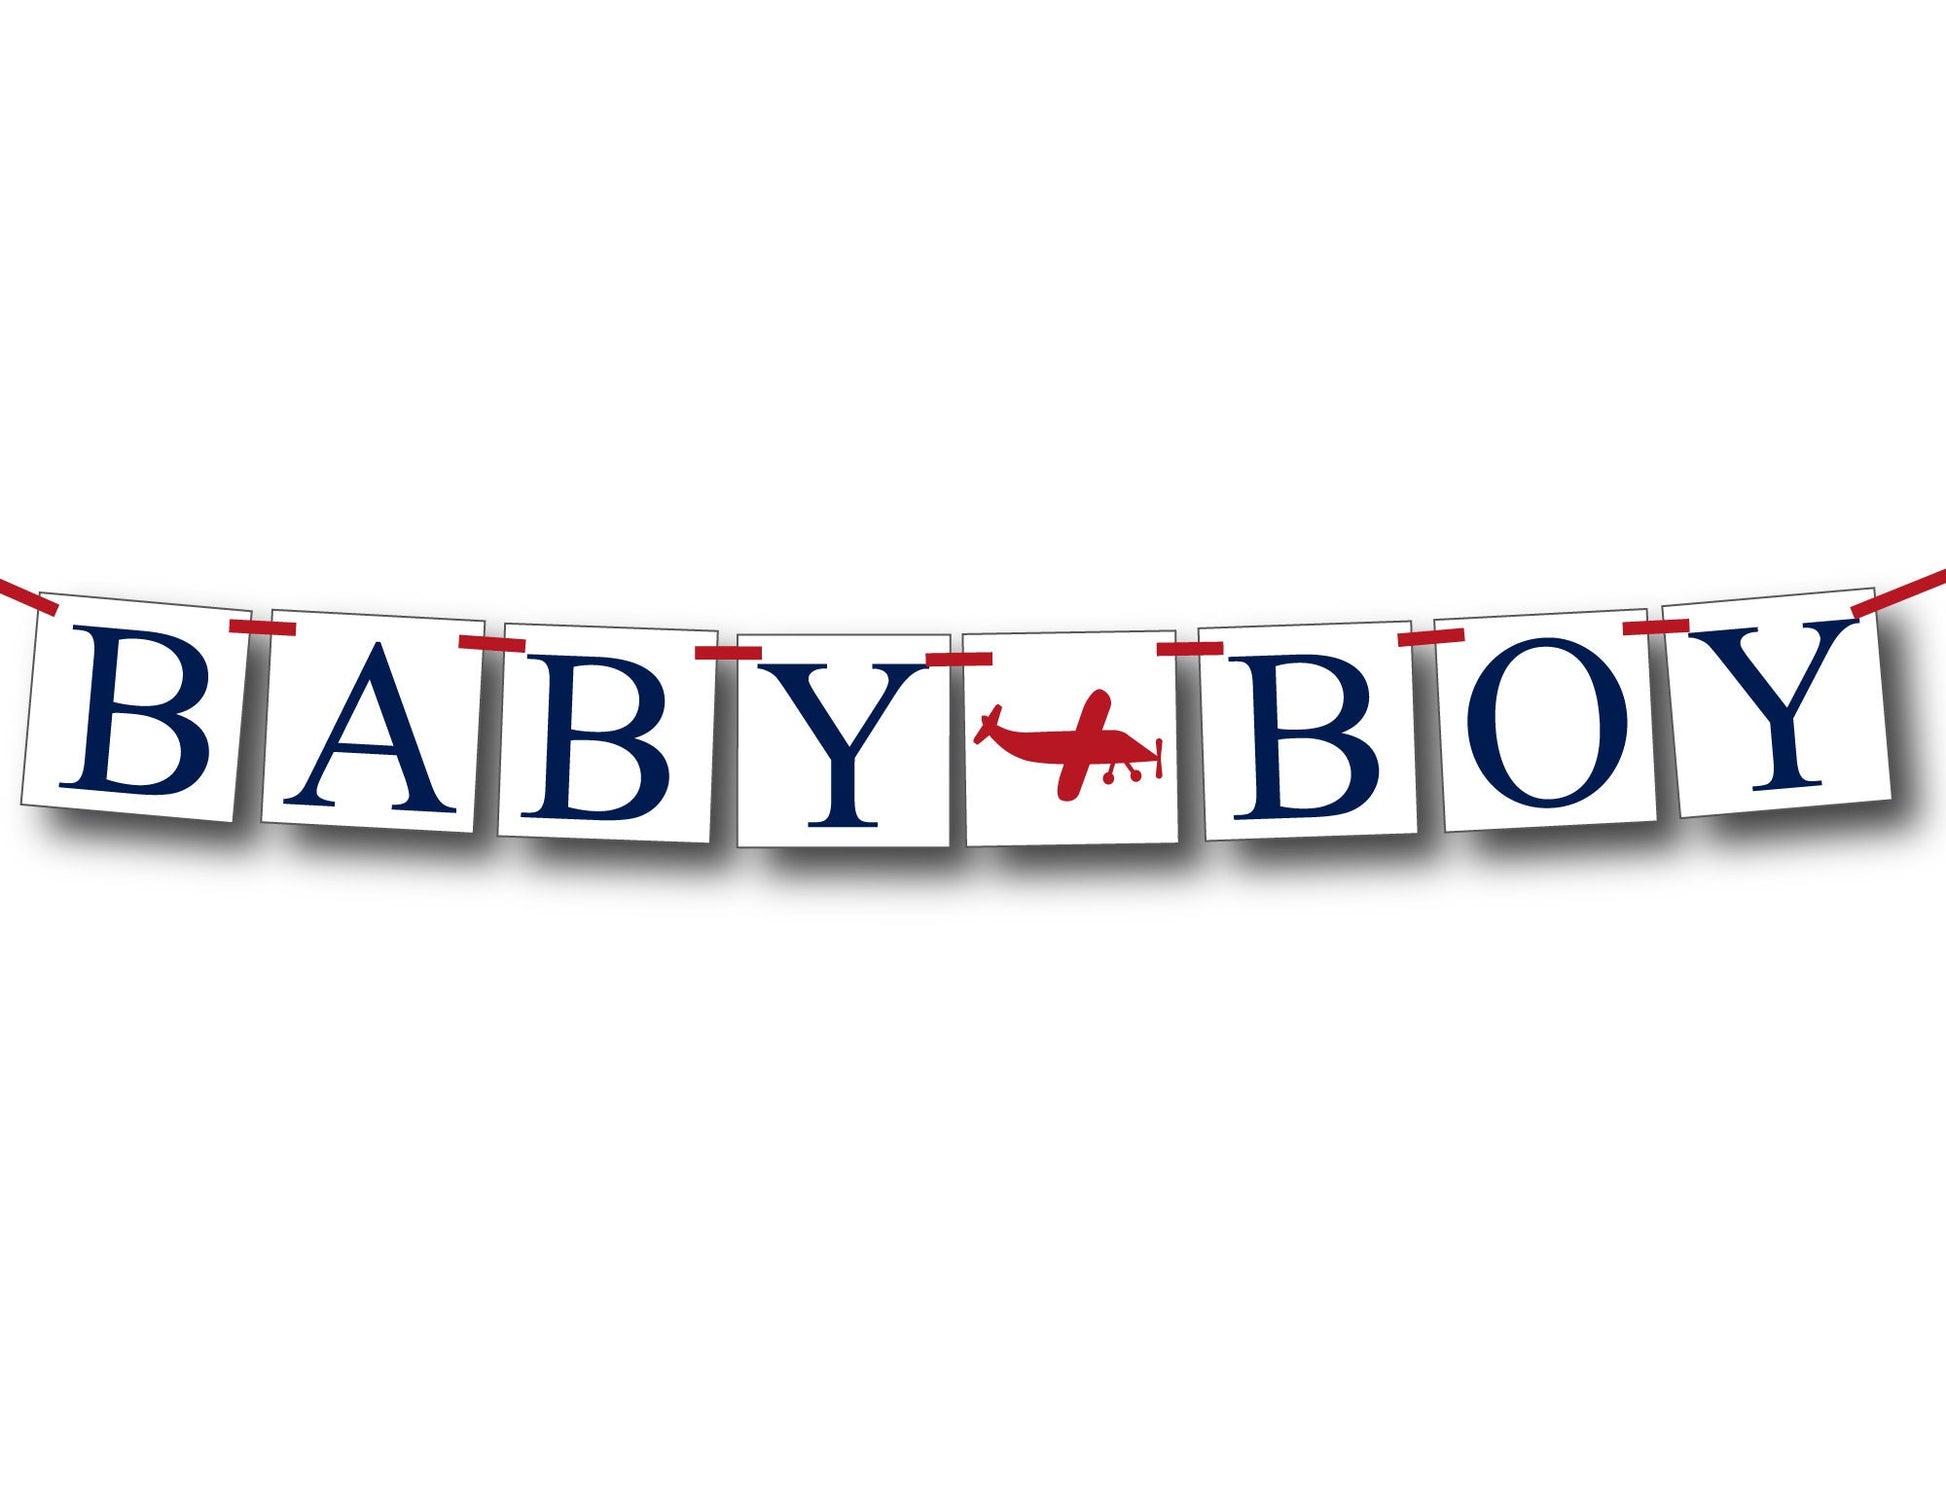 airplane baby boy banner